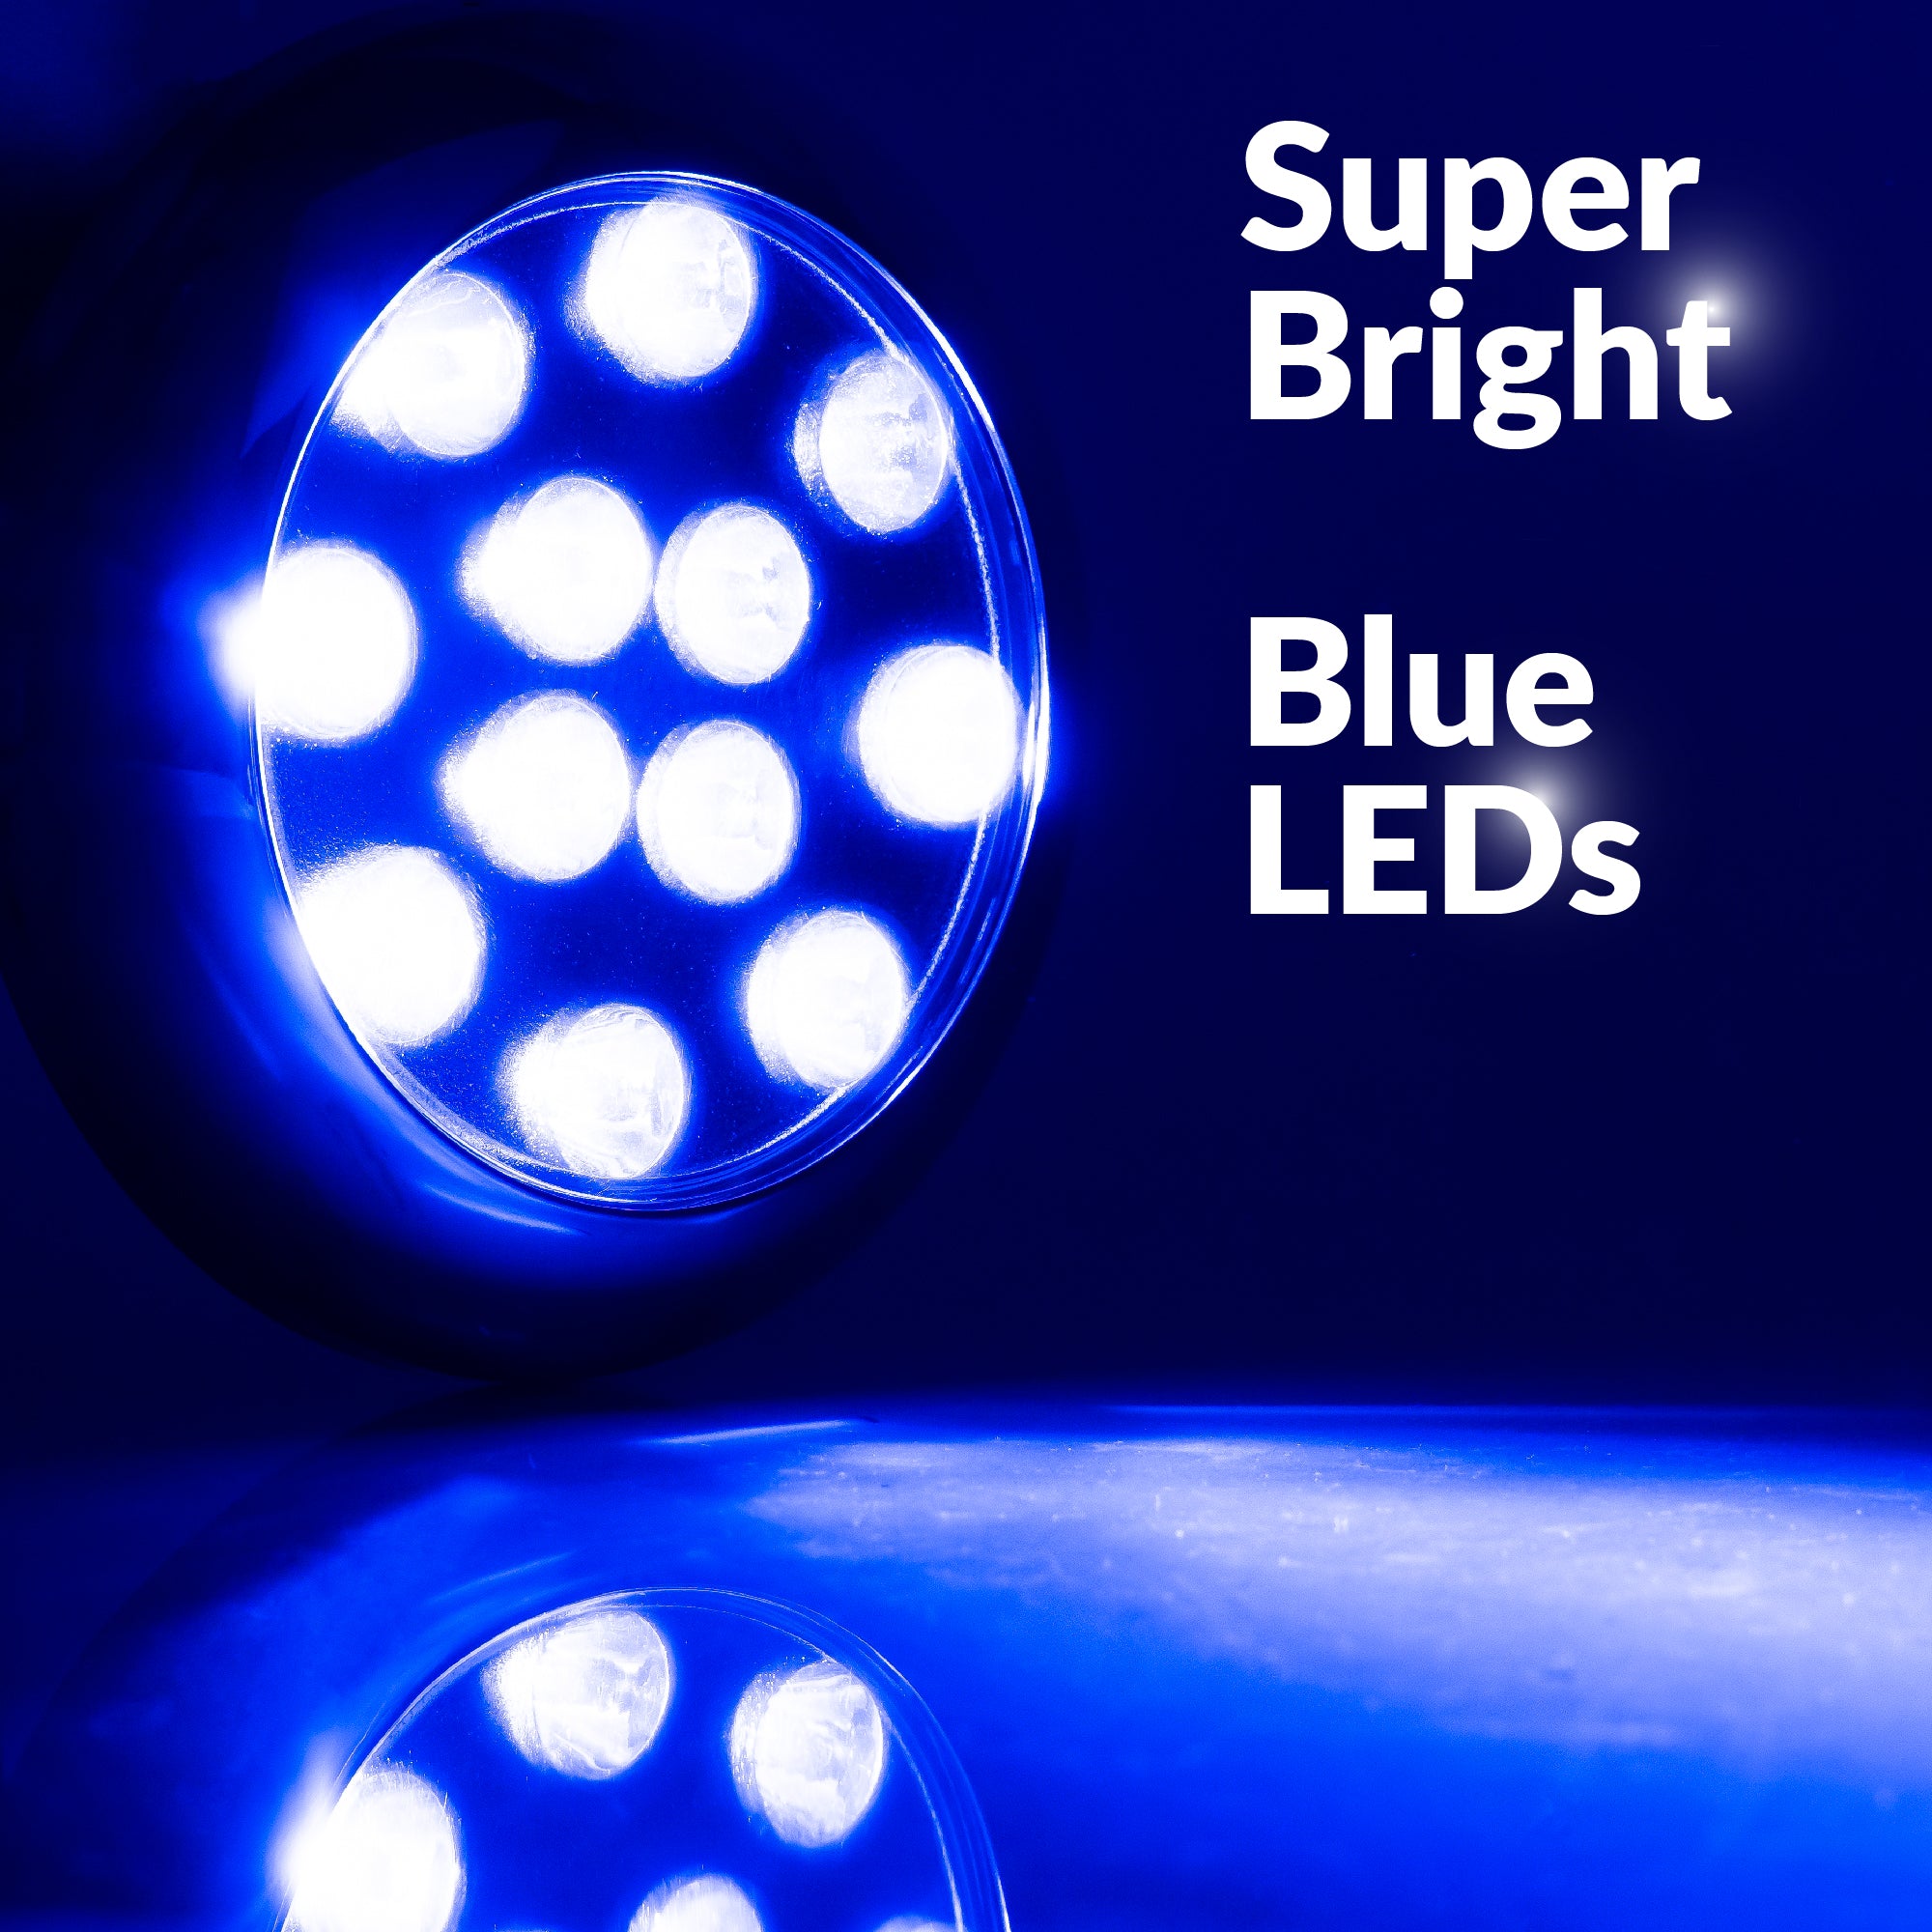 LED Underwater Transom Light, Stainless Steel Bezel, Blue - FO4461